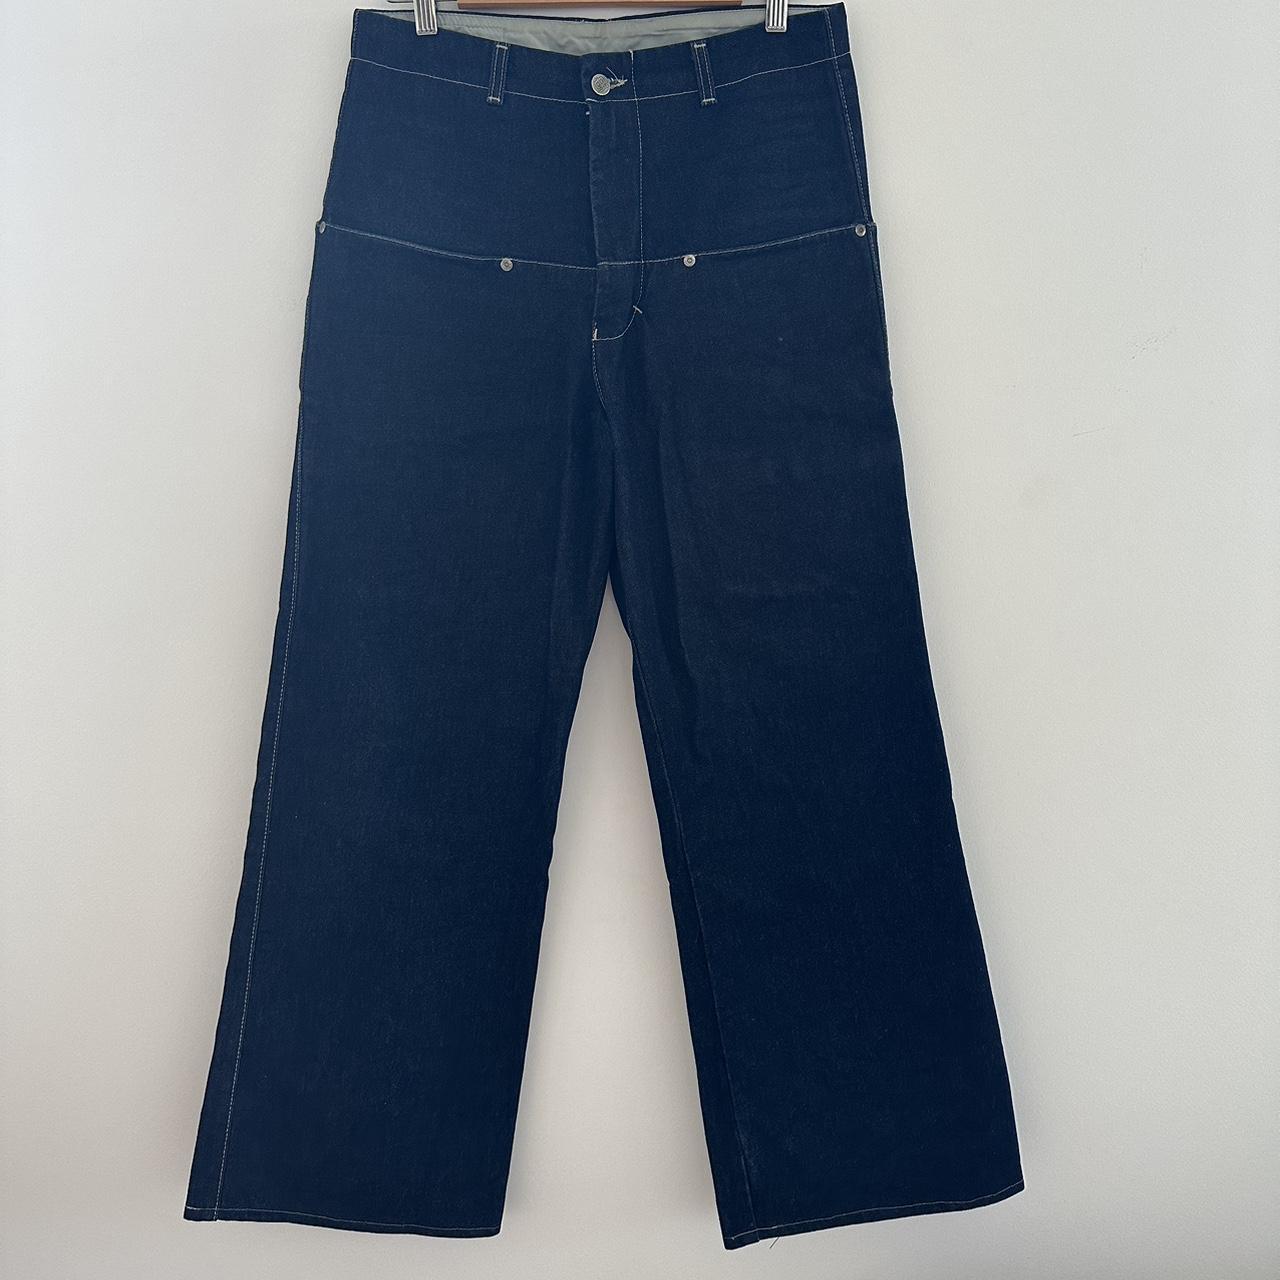 Made in NZ 🇳🇿 BUG DENIM Flatliner Jeans. Super dope... - Depop